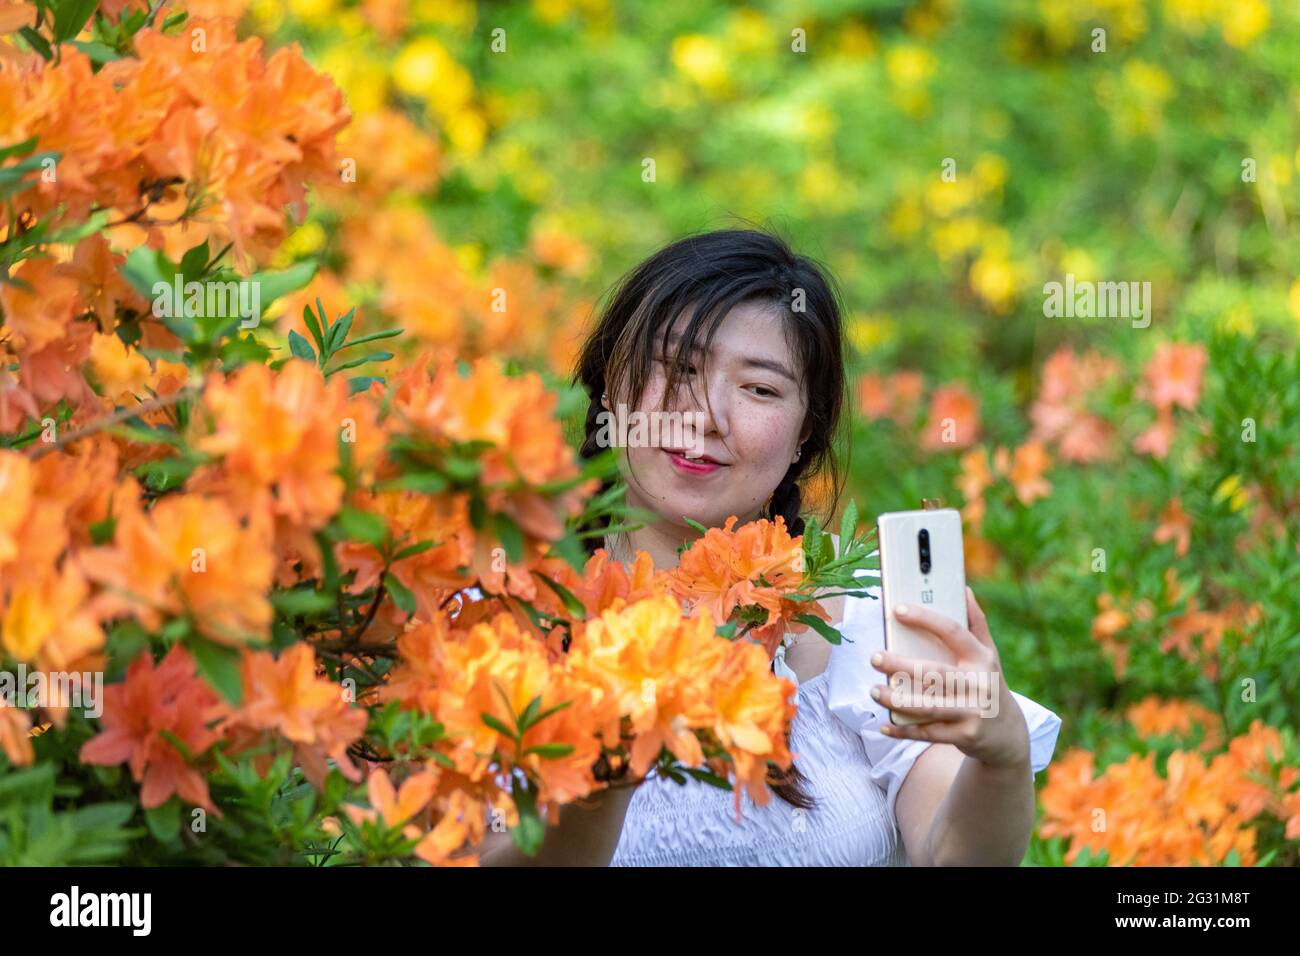 Junge Frau, die ein Selfie mit dem Mobiltelefon unter blühenden Rhododendronen im Haaga Rhododendron Park in Helsinki, Finnland, macht Stockfoto